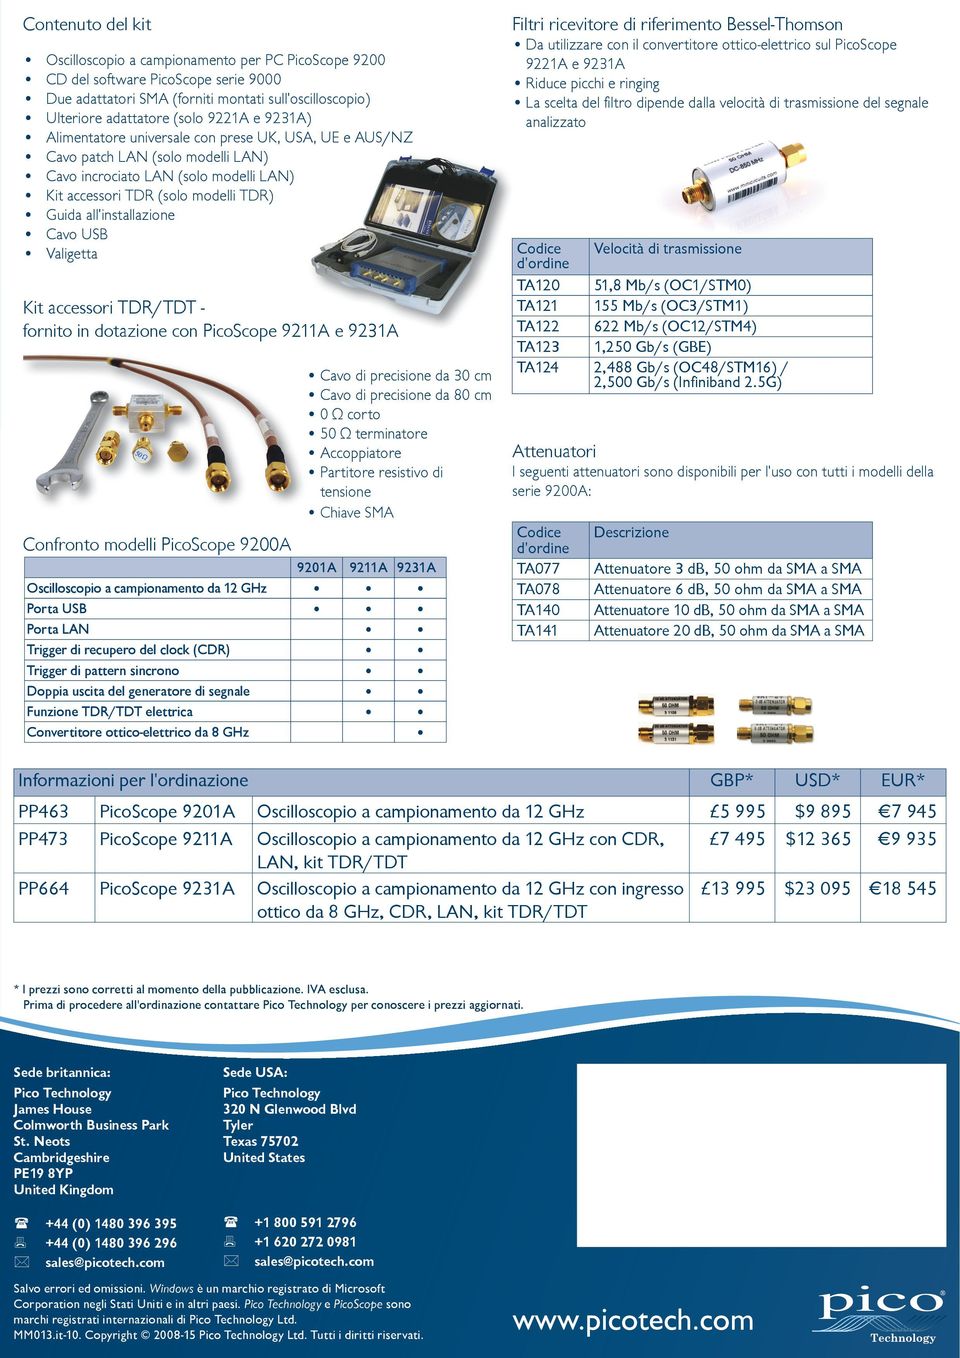 Cavo USB Valigetta Kit accessori TDR/TDT - fornito in dotazione con PicoScope 9211A e 9231A Confronto modelli PicoScope 9200A Cavo di precisione da 30 cm Cavo di precisione da 80 cm 0 Ω corto 50 Ω